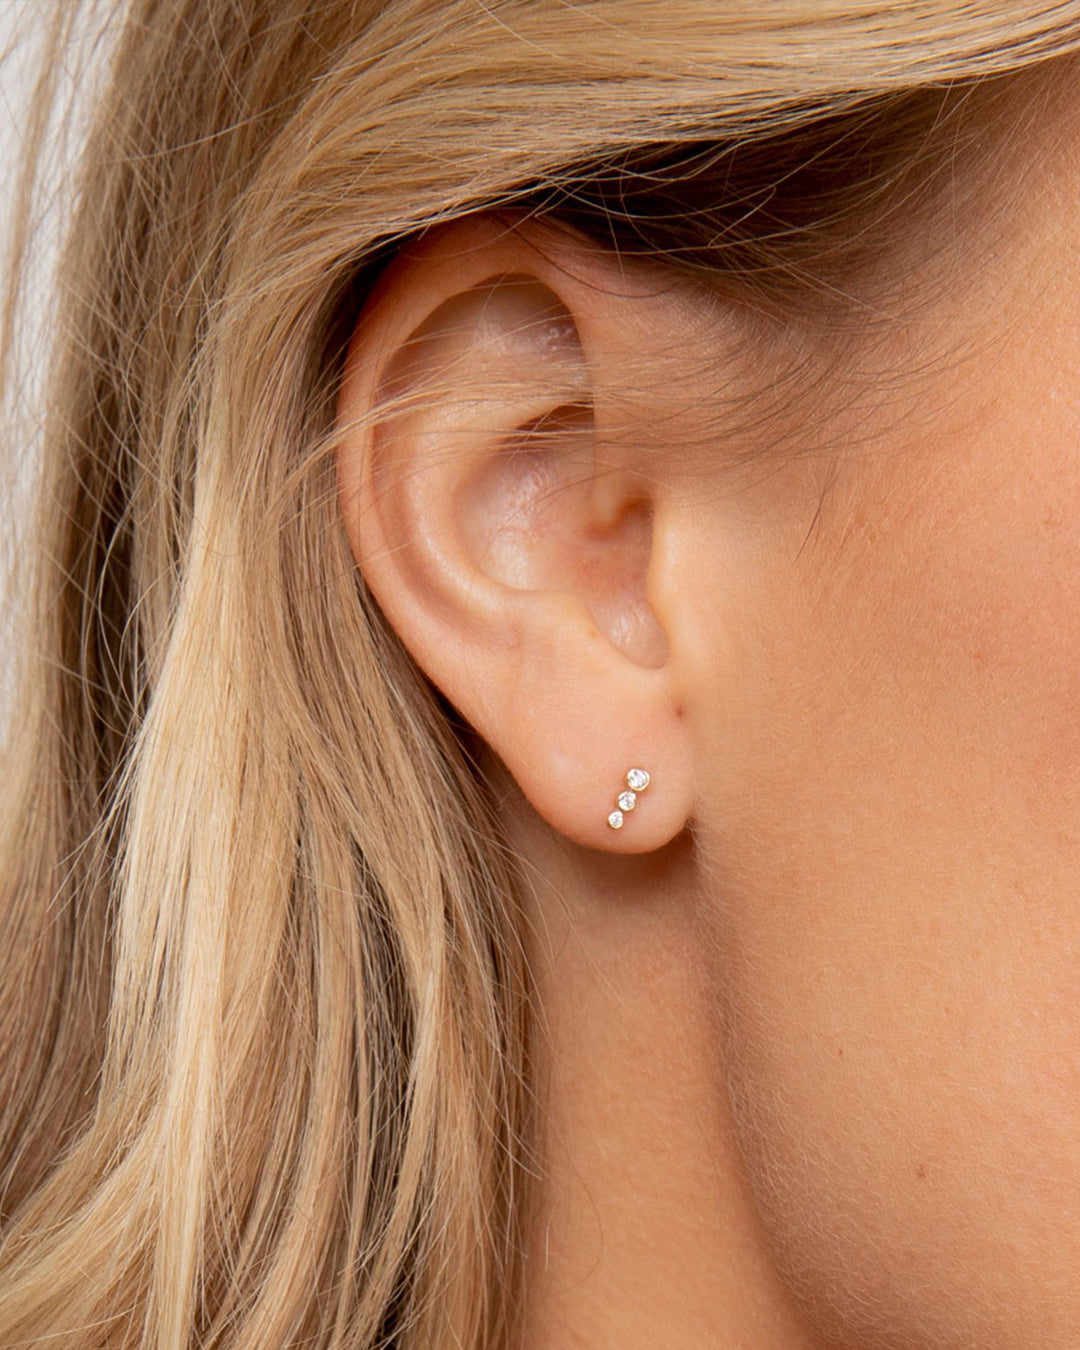 Newport Threaded Flat Back Stud Earring in 14K Solid Gold/Pair, Women's by Gorjana